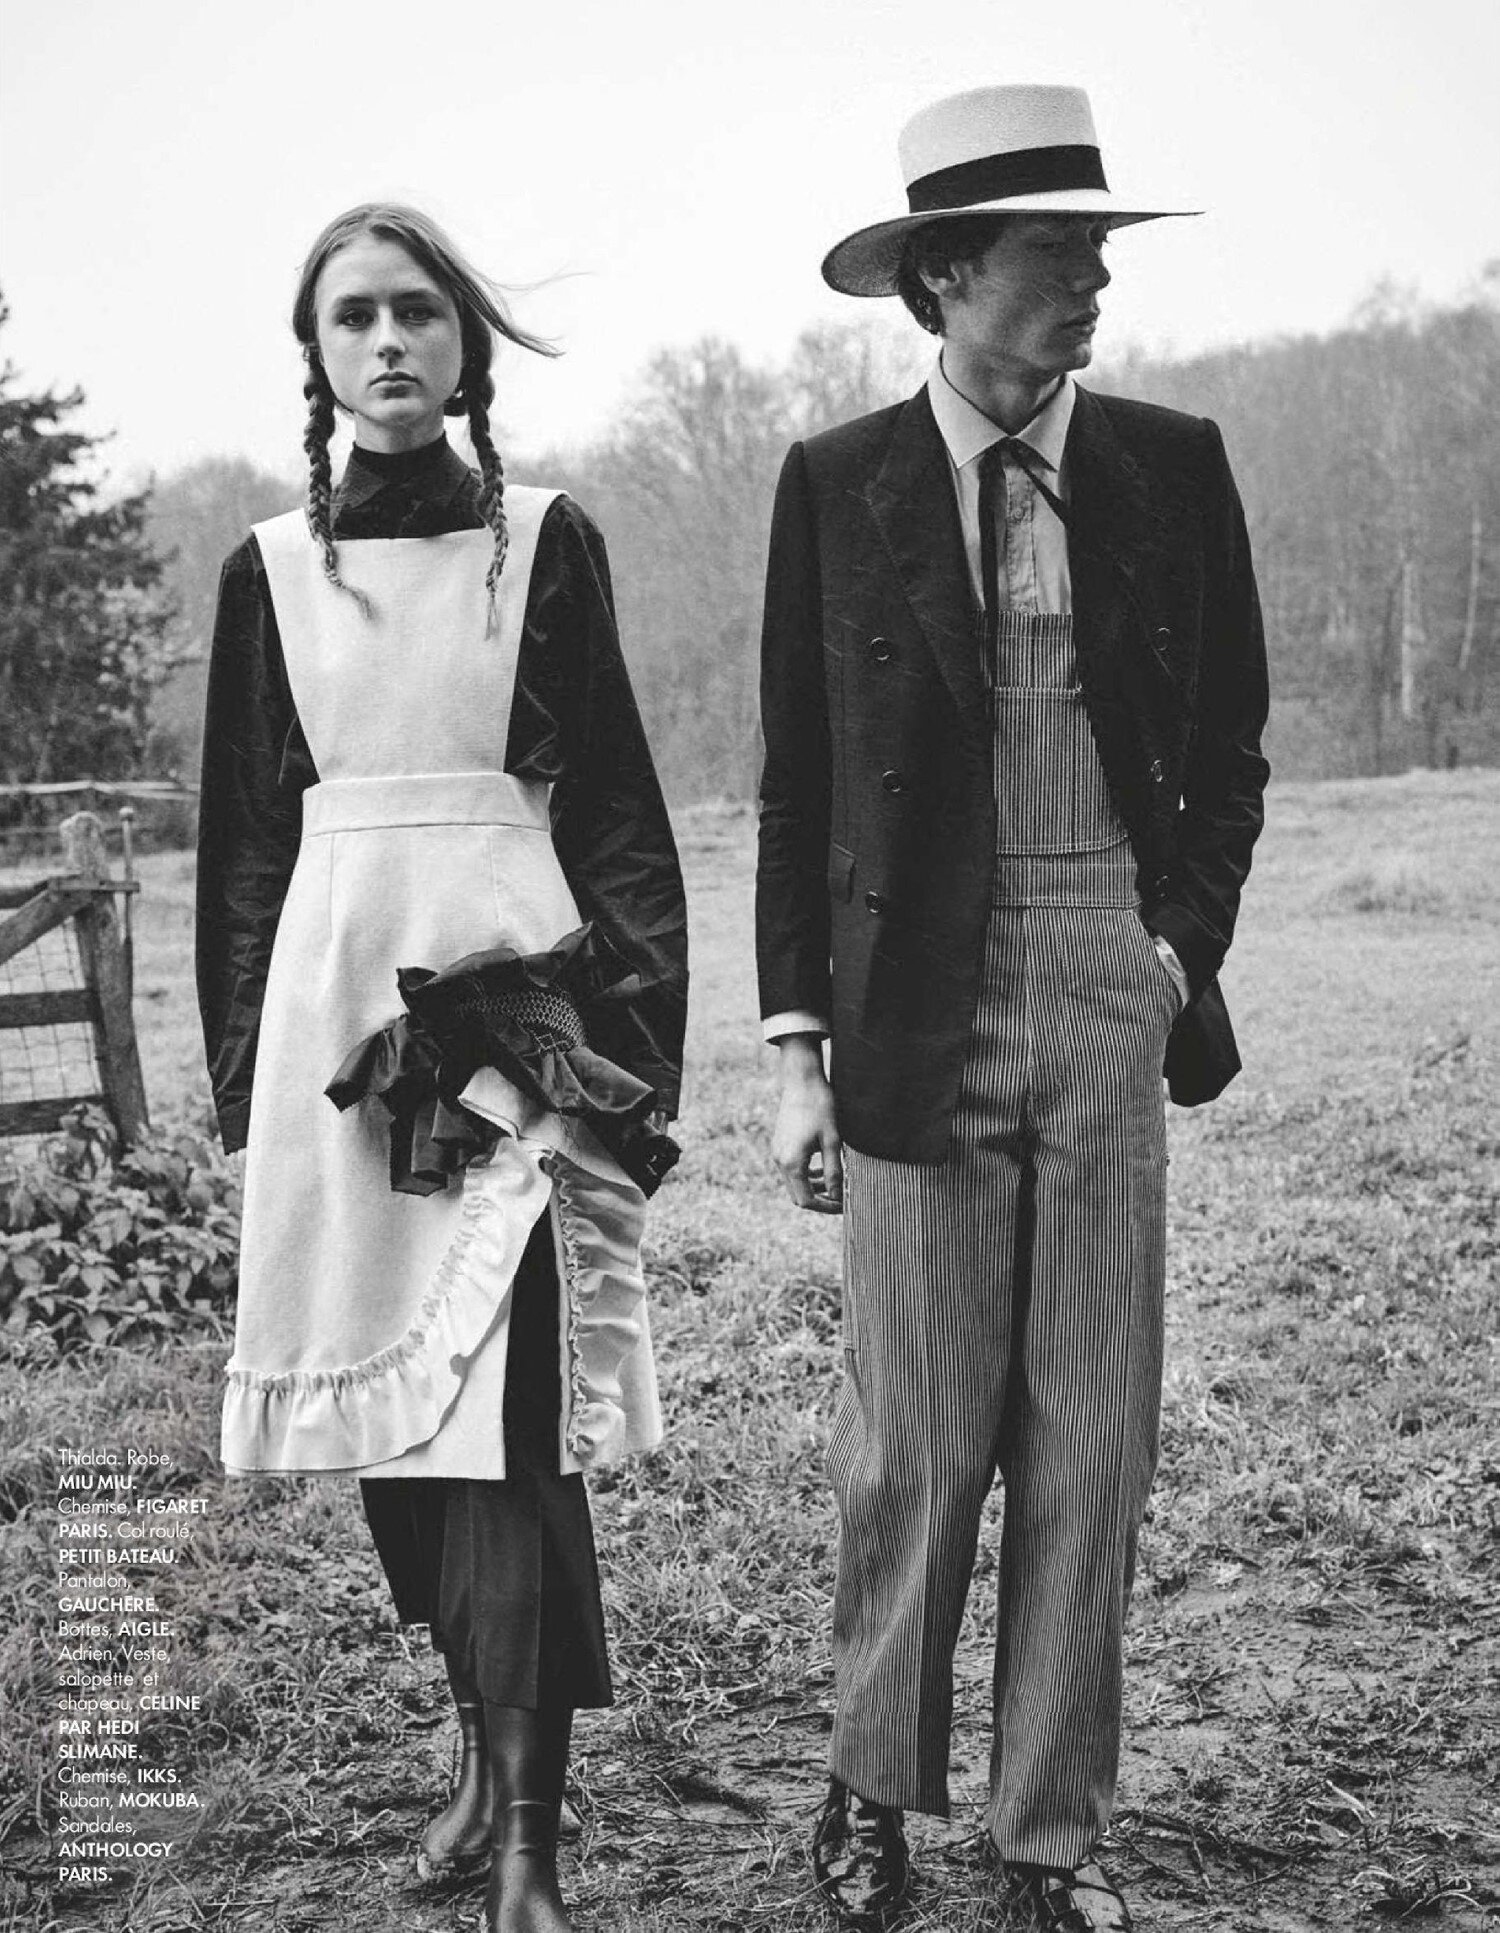 Johan Sandberg 'Belle Amish' for ELLE France May 7 (14).jpg